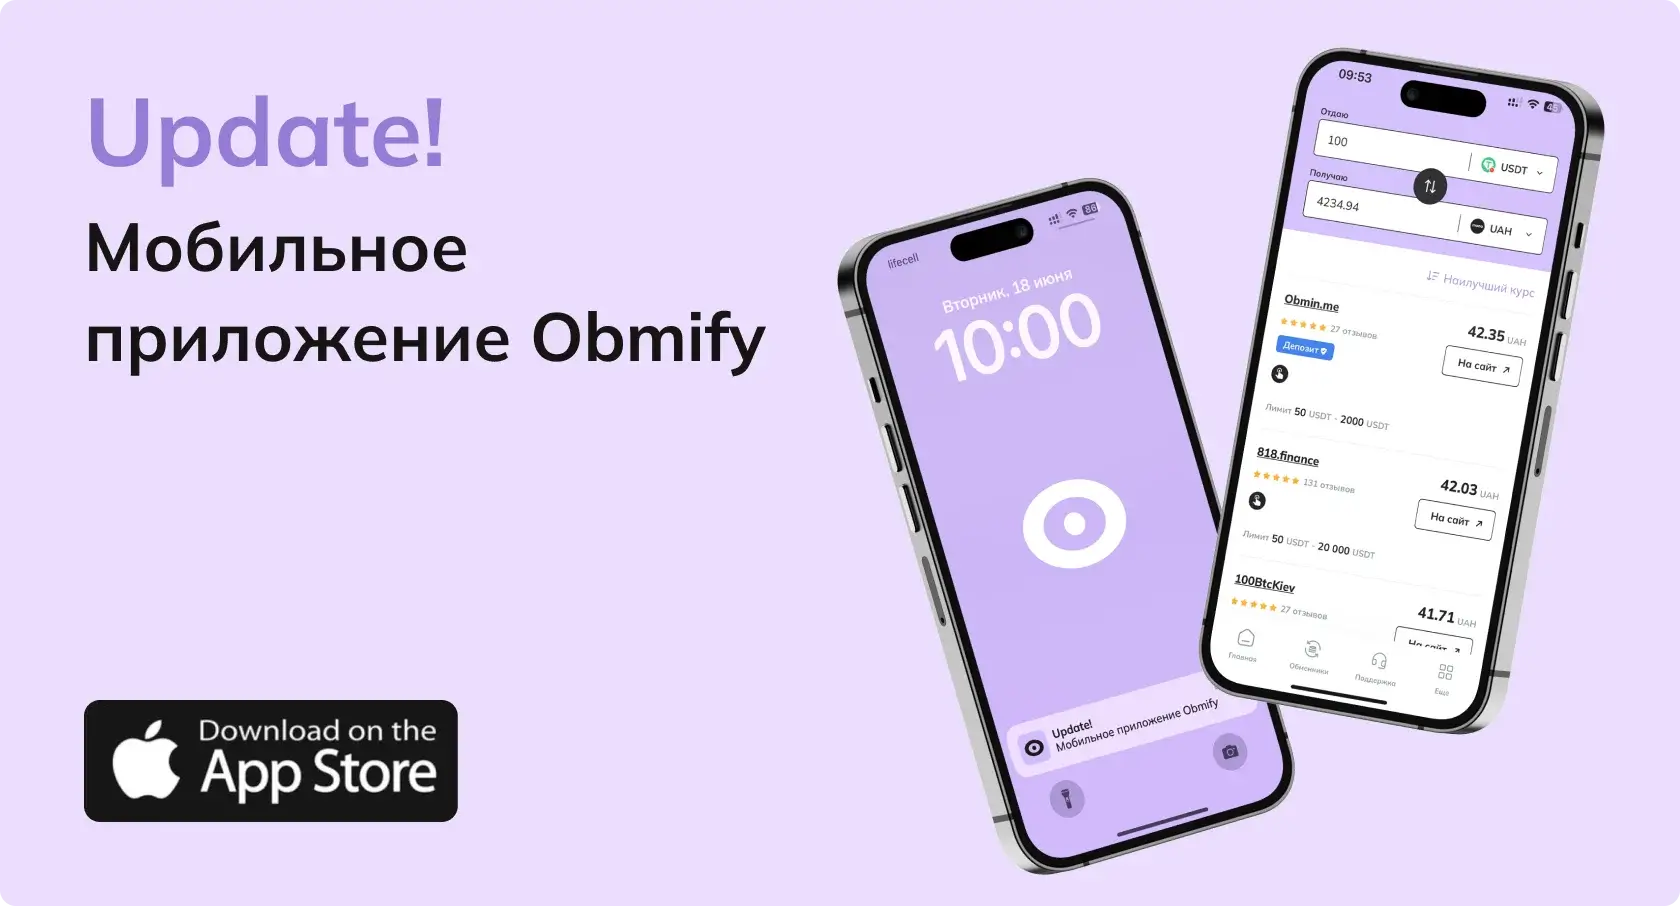 Мобильное приложение Obmify